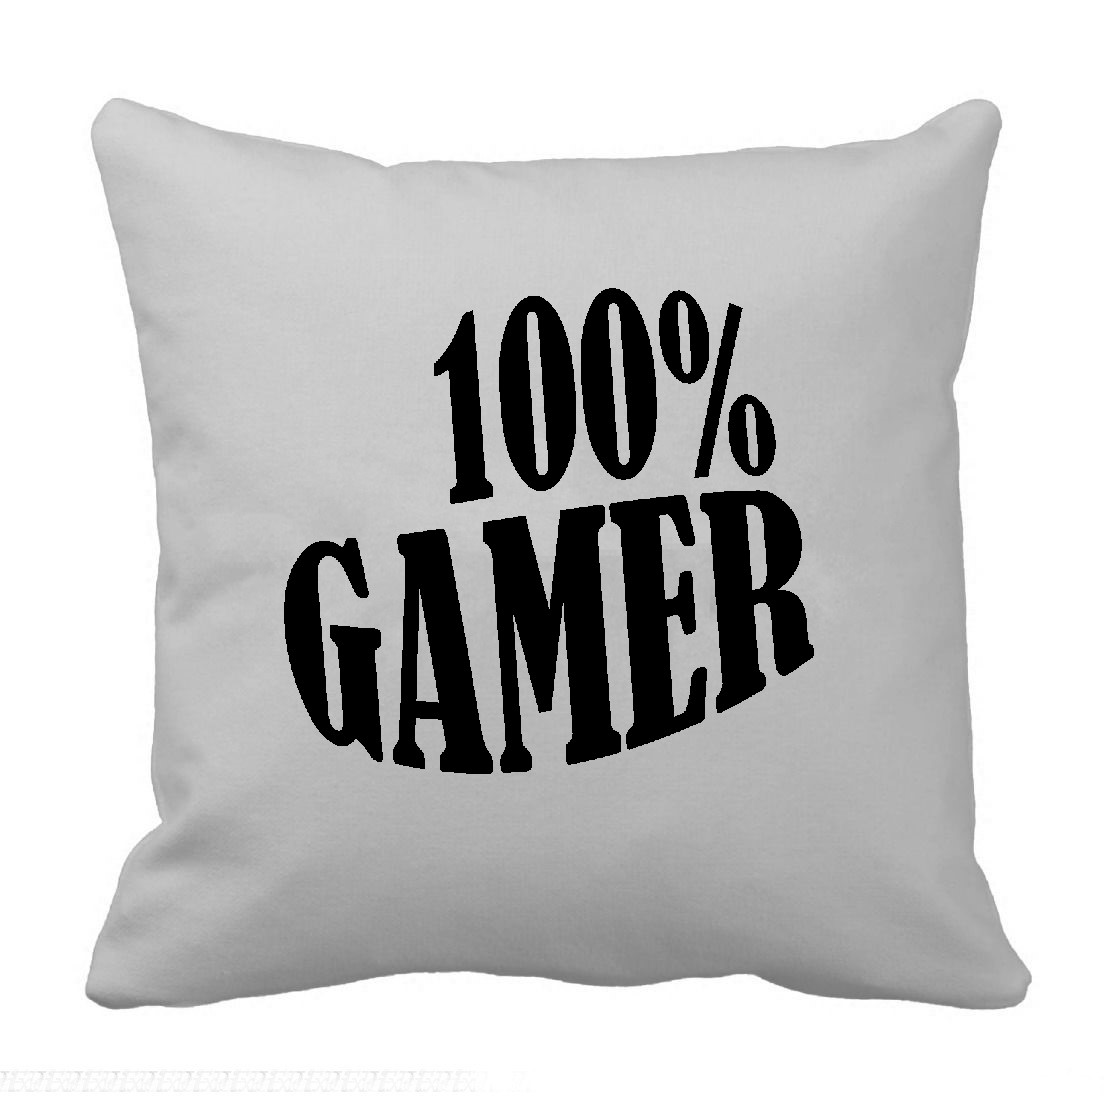 100% gamer1